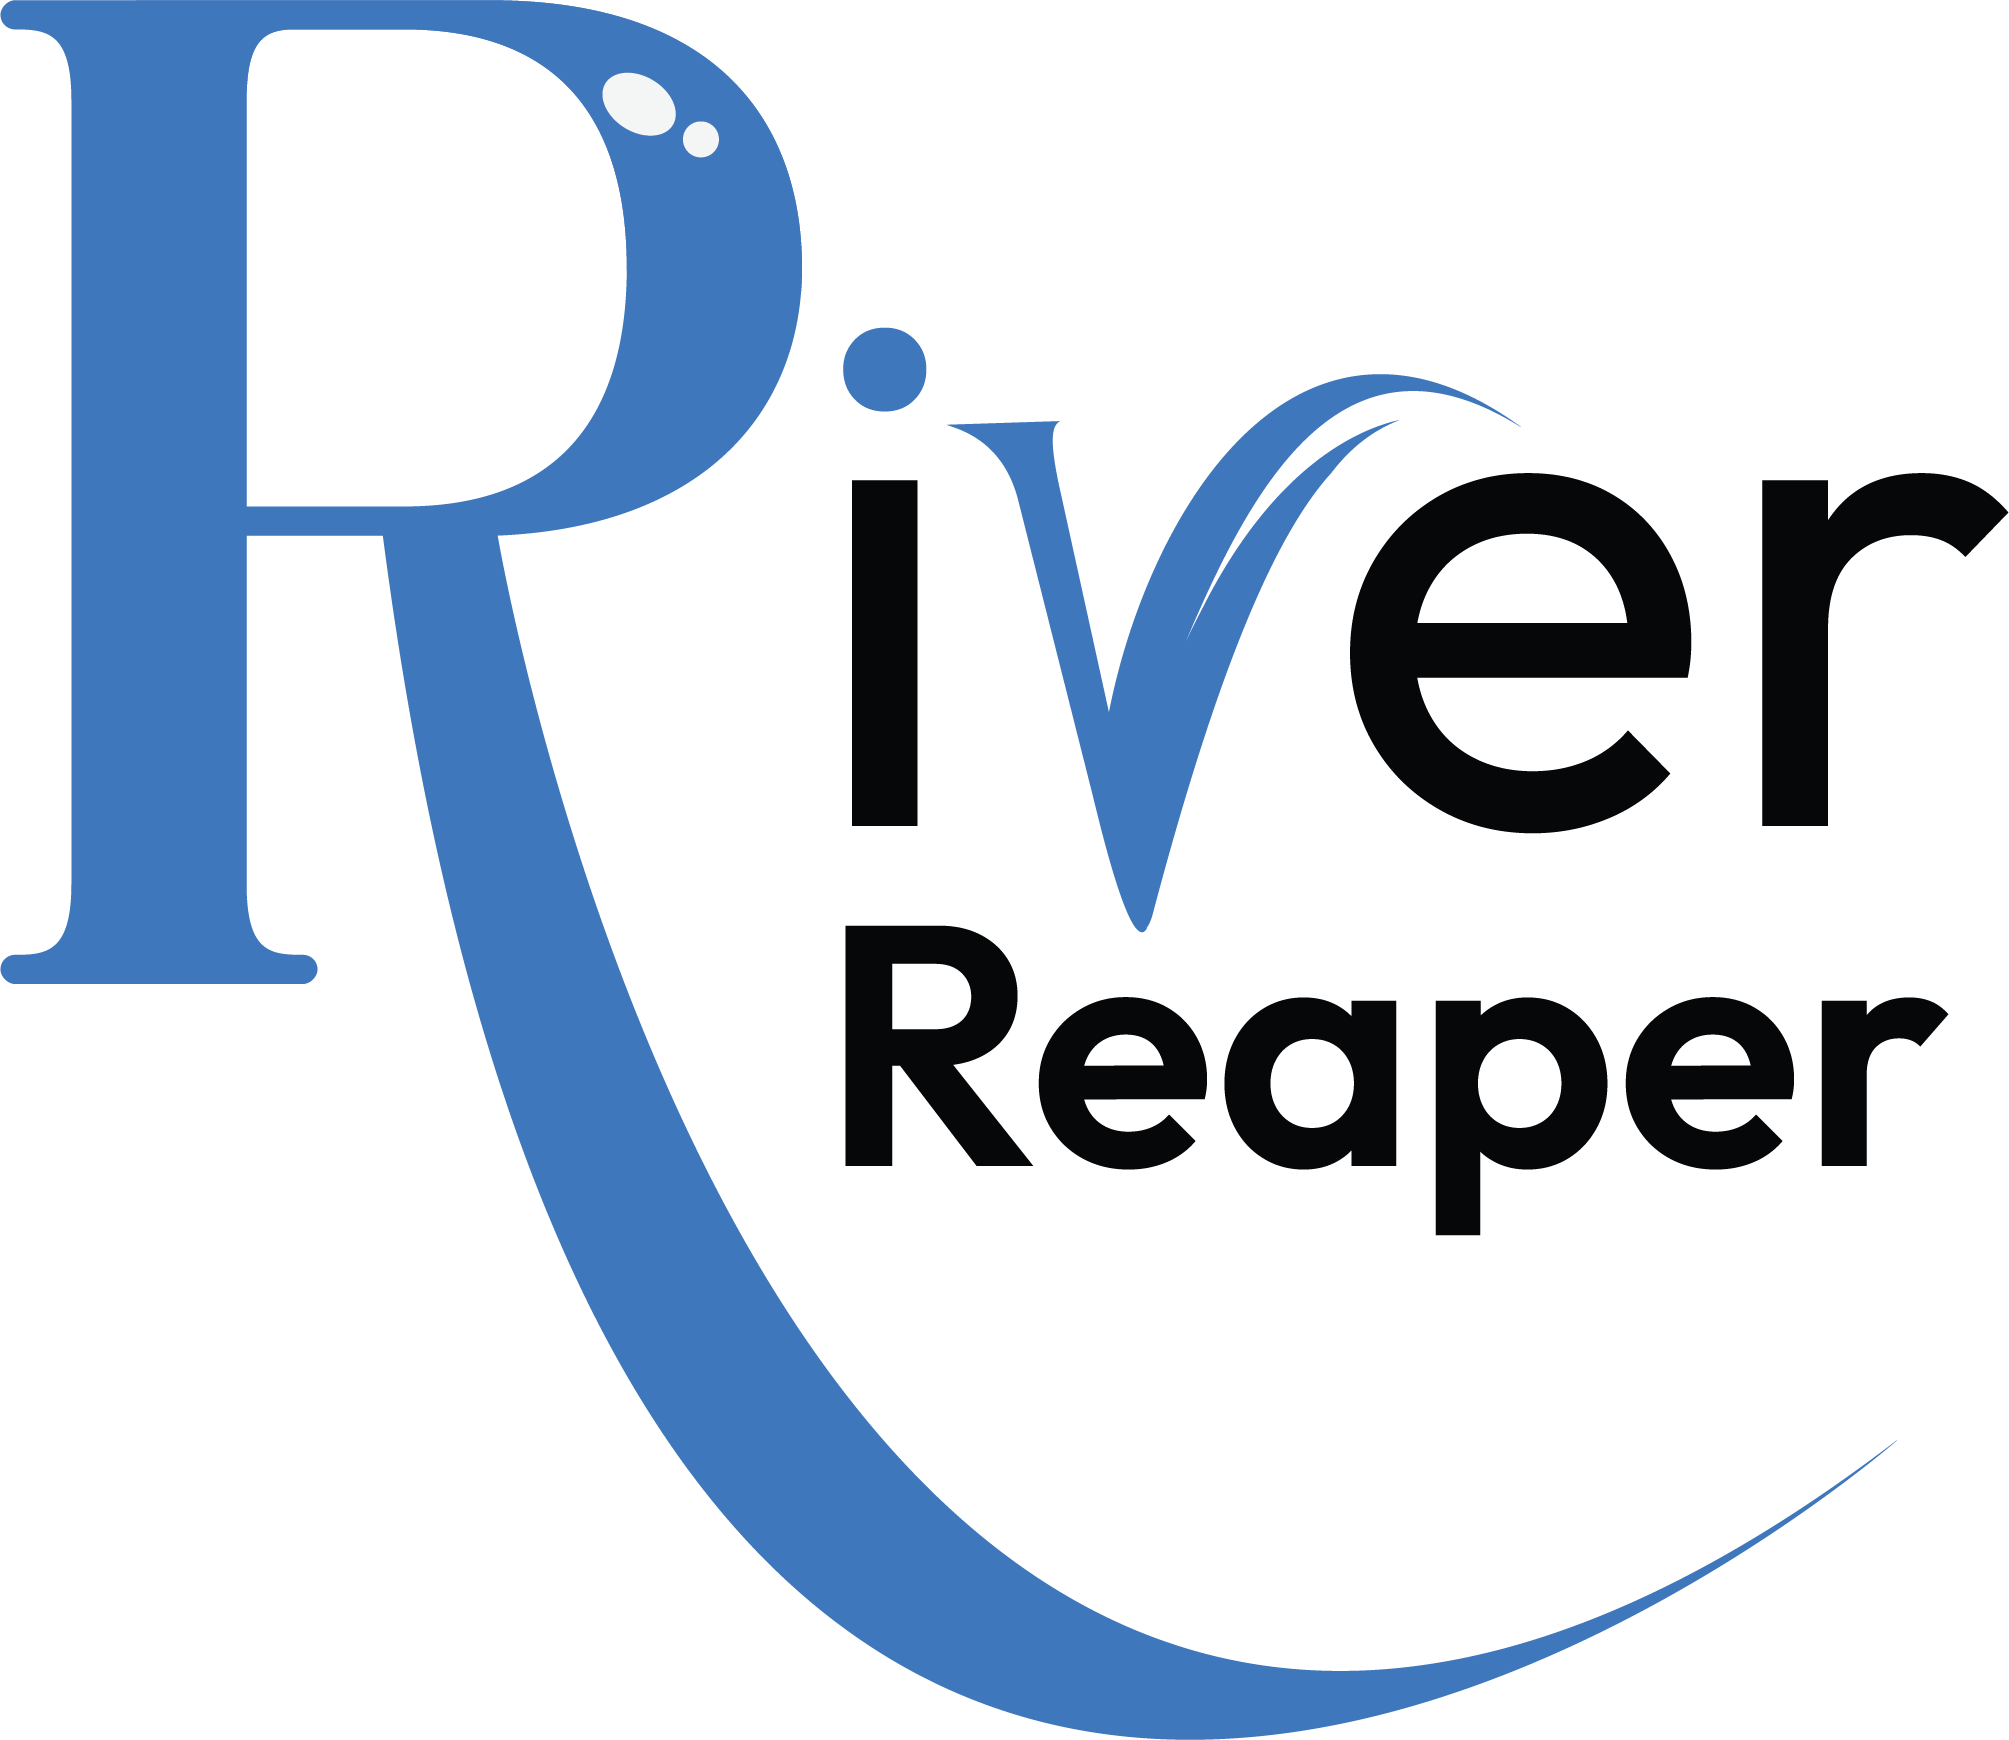 River Reaper Guide Service